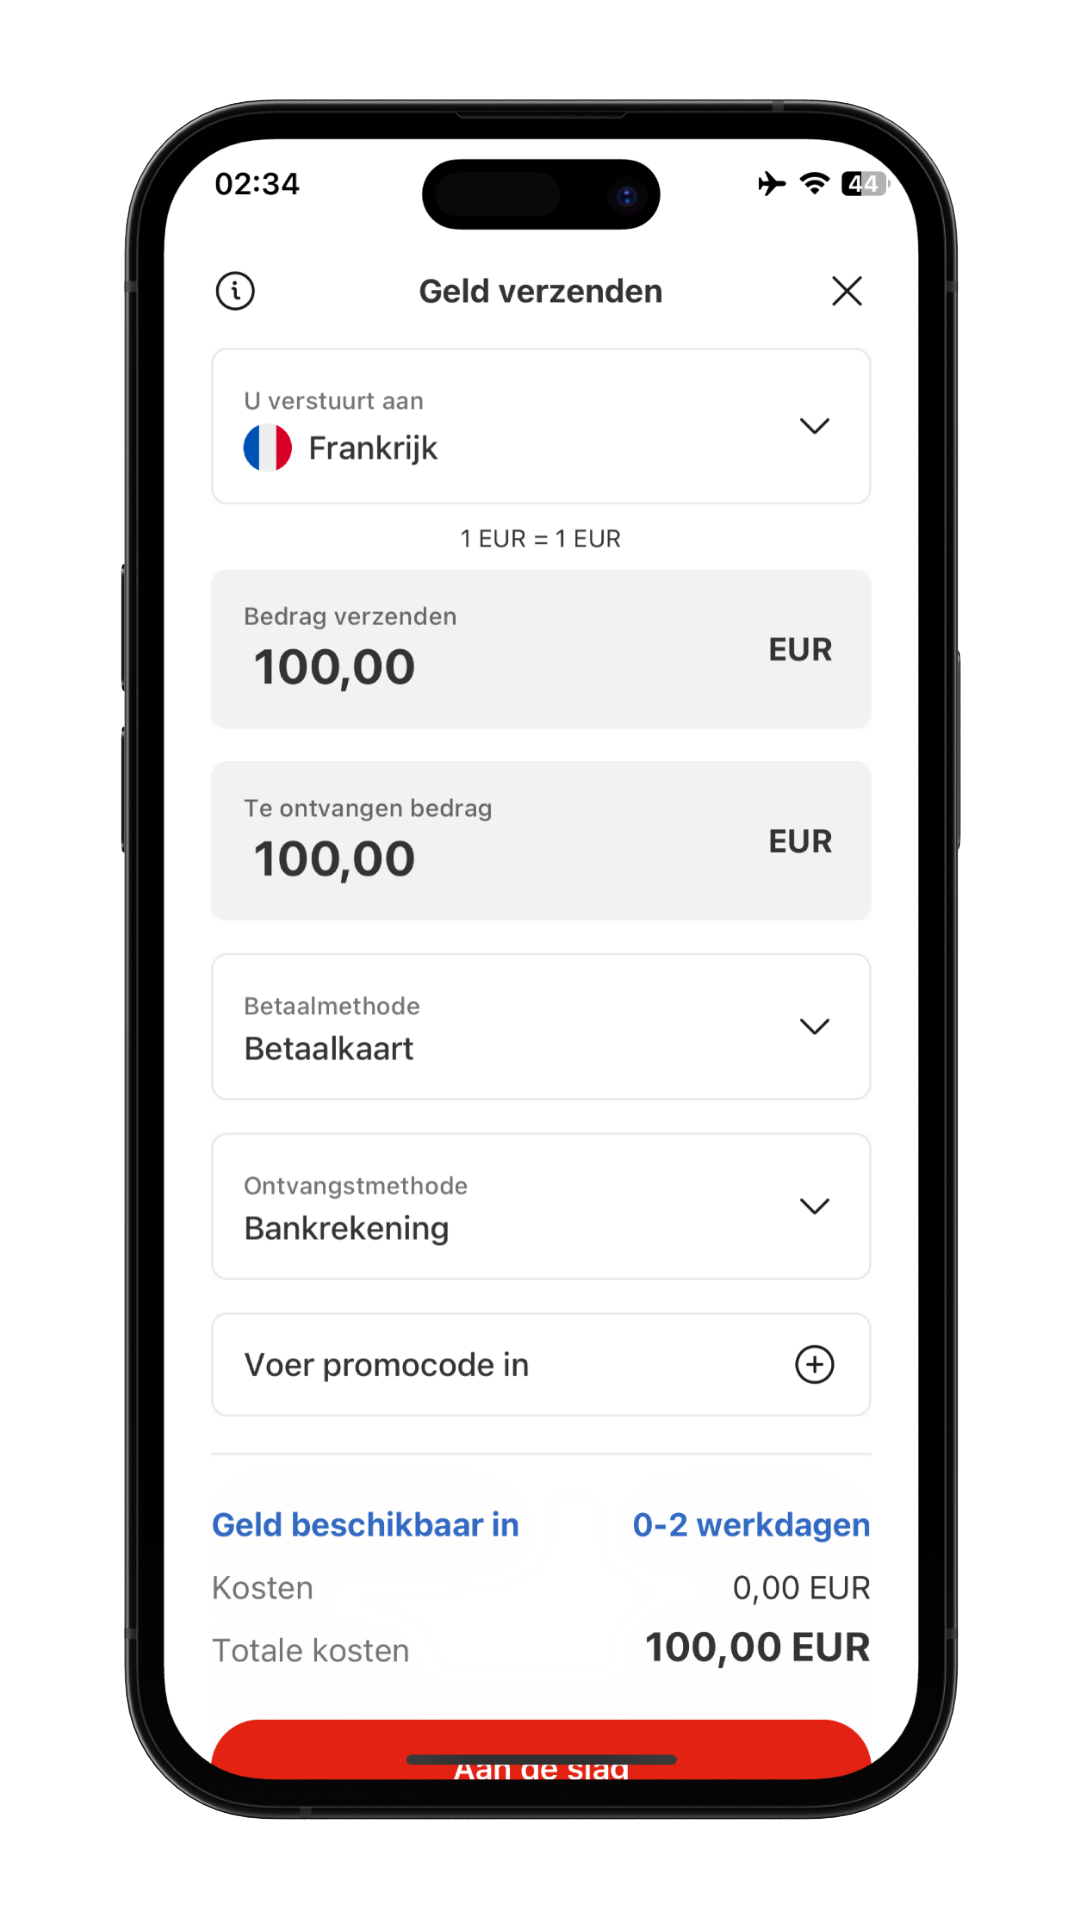 MoneyGram Money Transfer App-scherm om het bedrag in te voeren en te verzenden